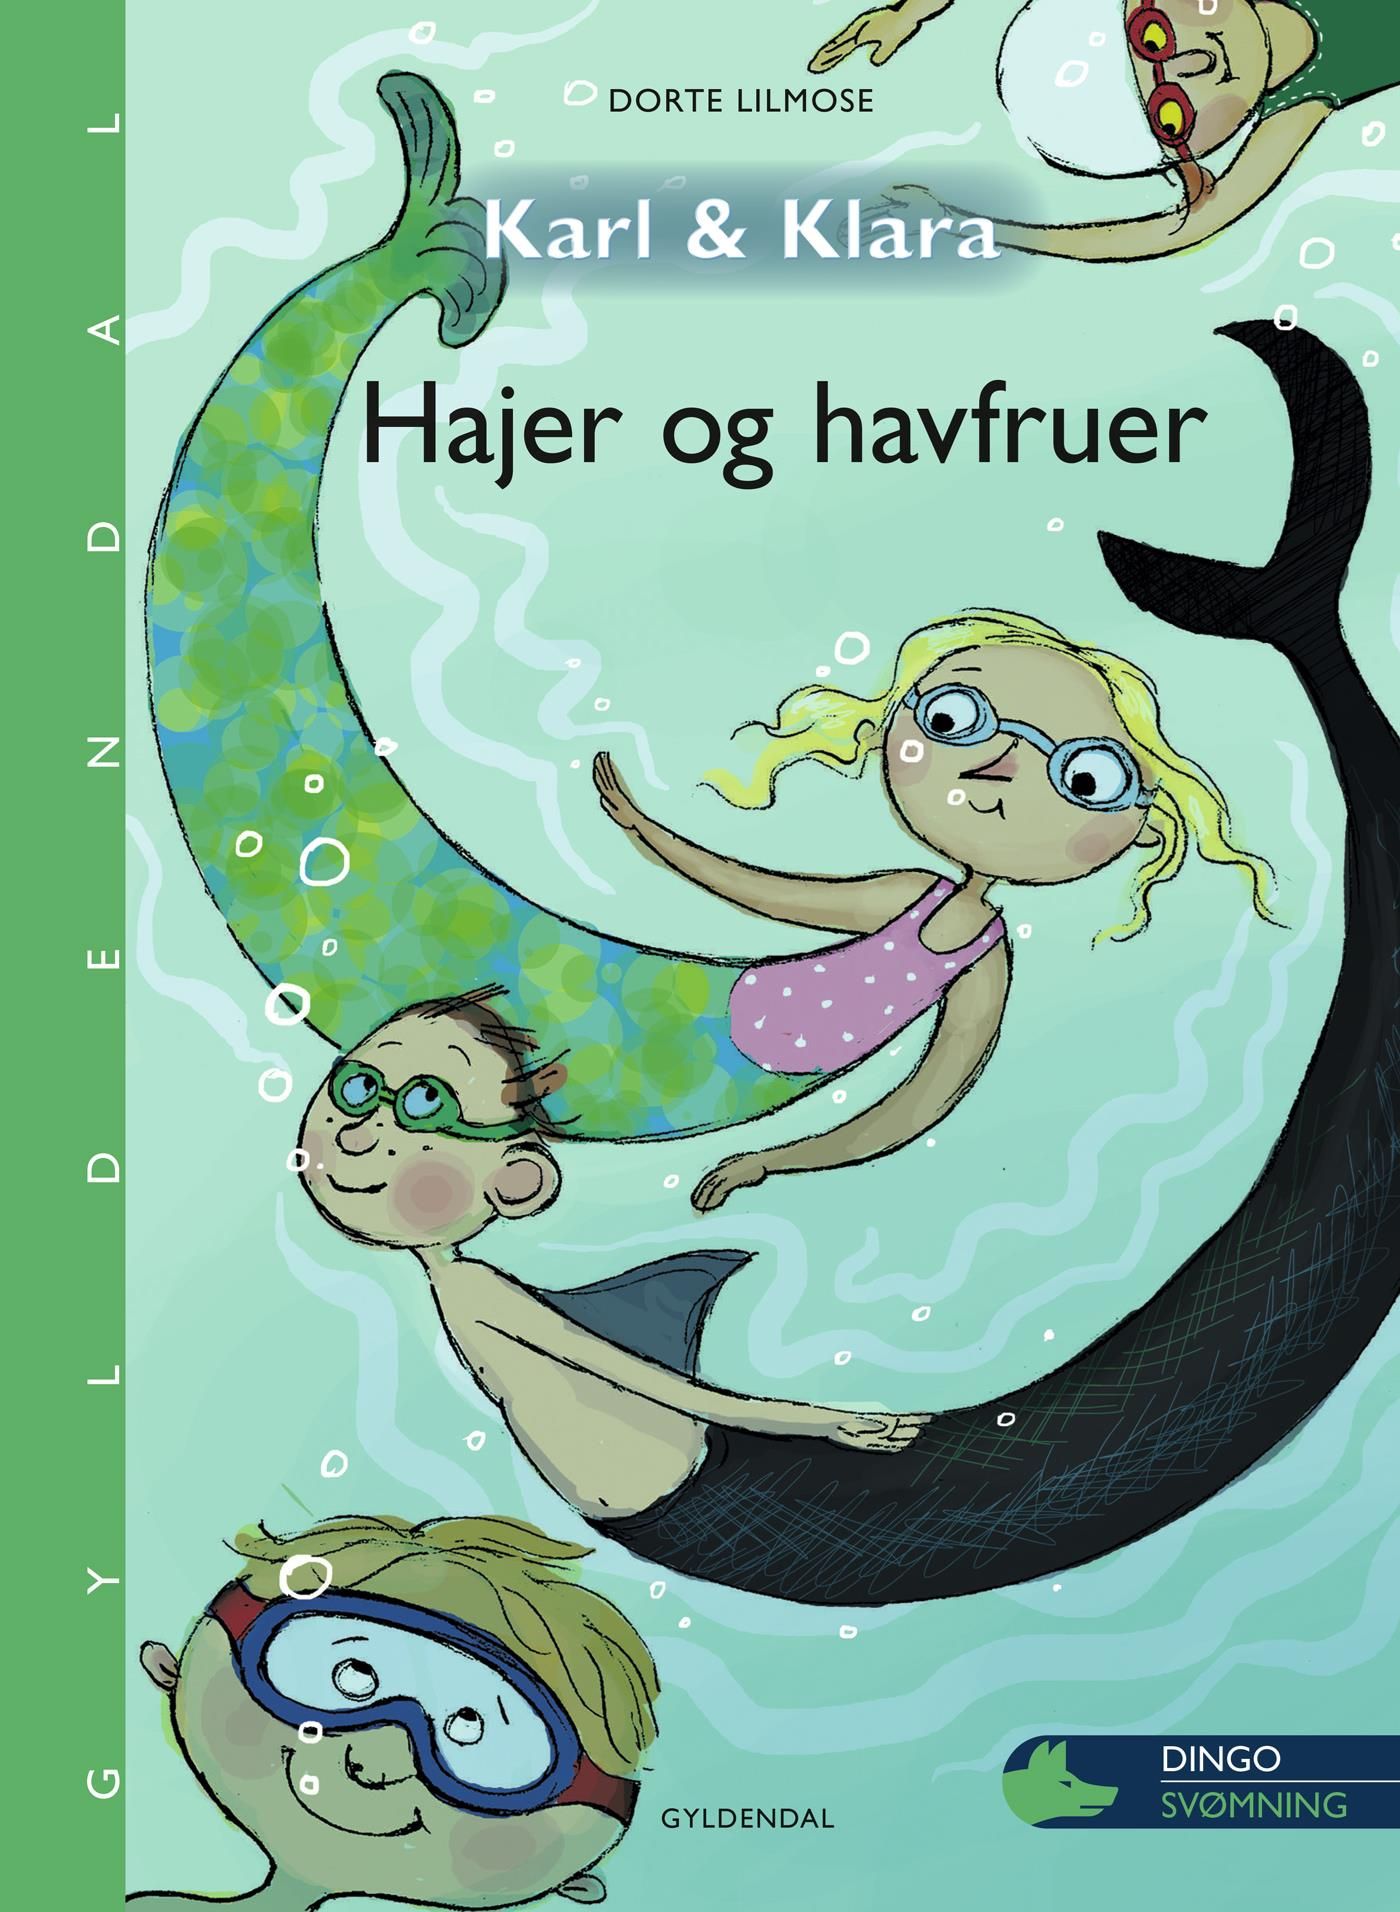 Karl og Klara - Hajer og havfruer, e-bok av Dorte Lilmose